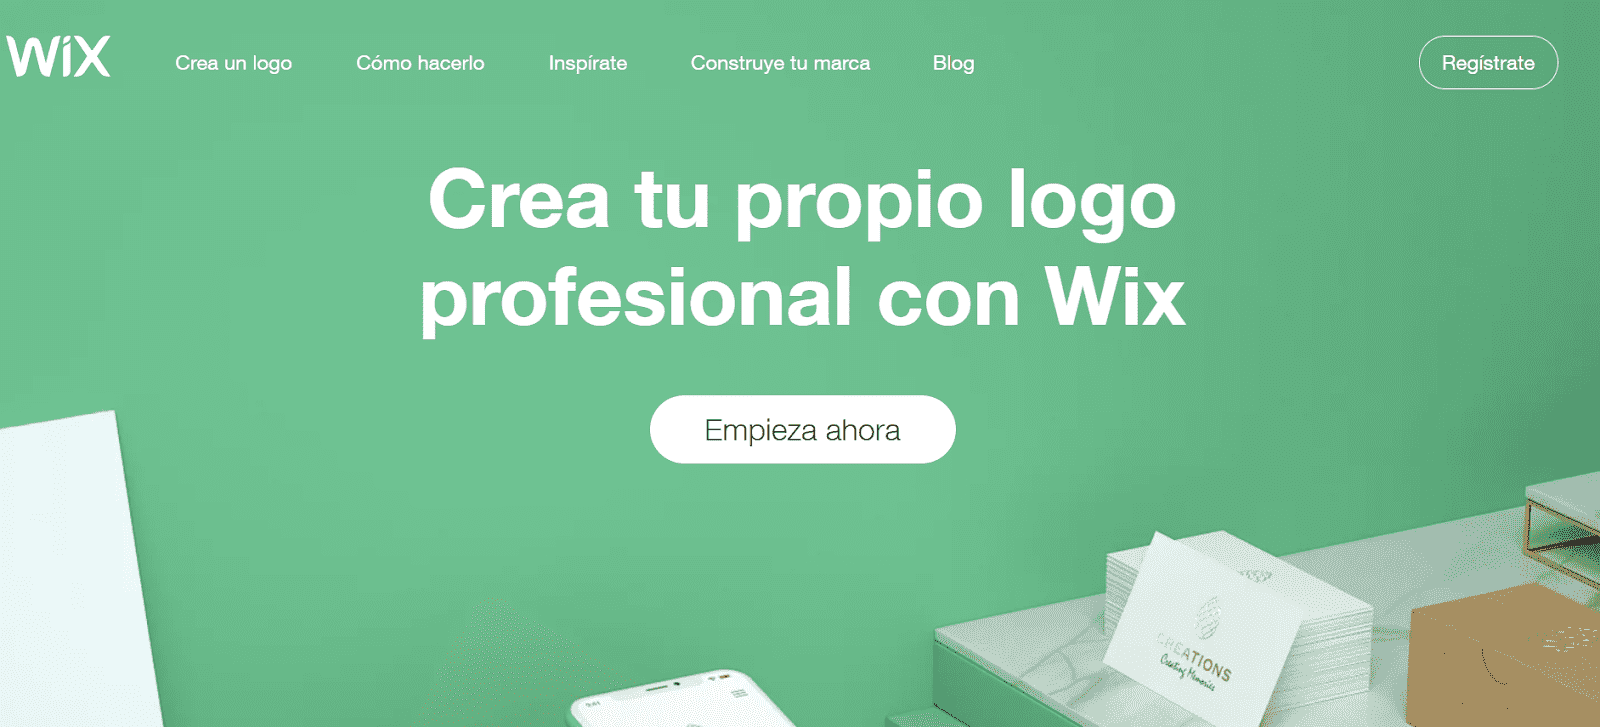 wix logo maker